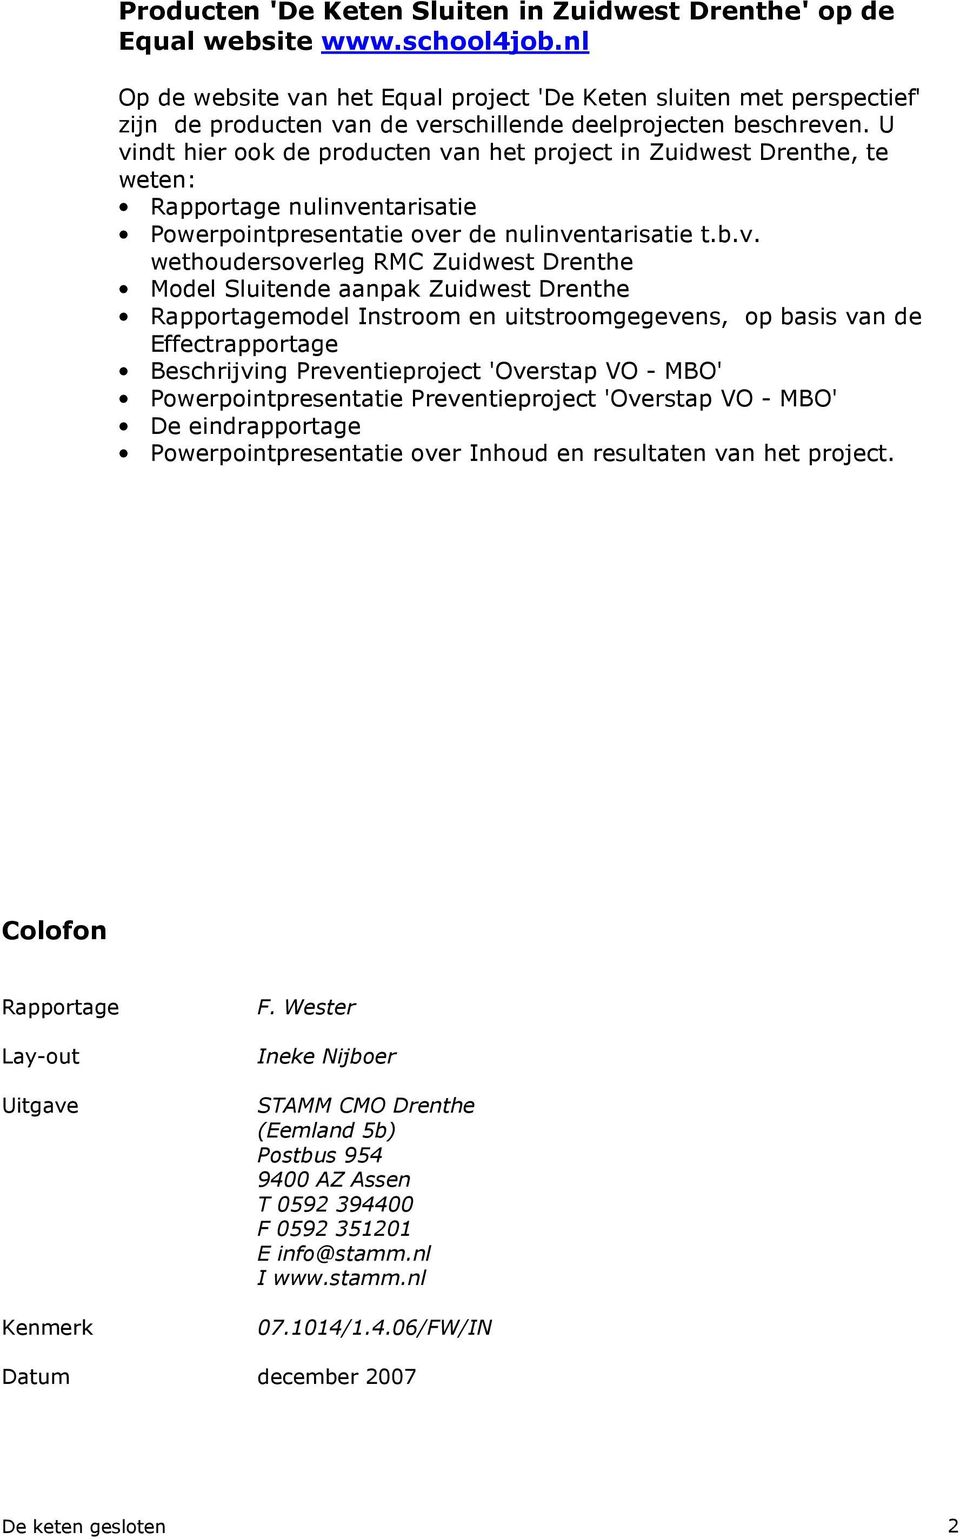 U vindt hier ook de producten van het project in Zuidwest Drenthe, te weten: Rapportage nulinventarisatie Powerpointpresentatie over de nulinventarisatie t.b.v. wethoudersoverleg RMC Zuidwest Drenthe